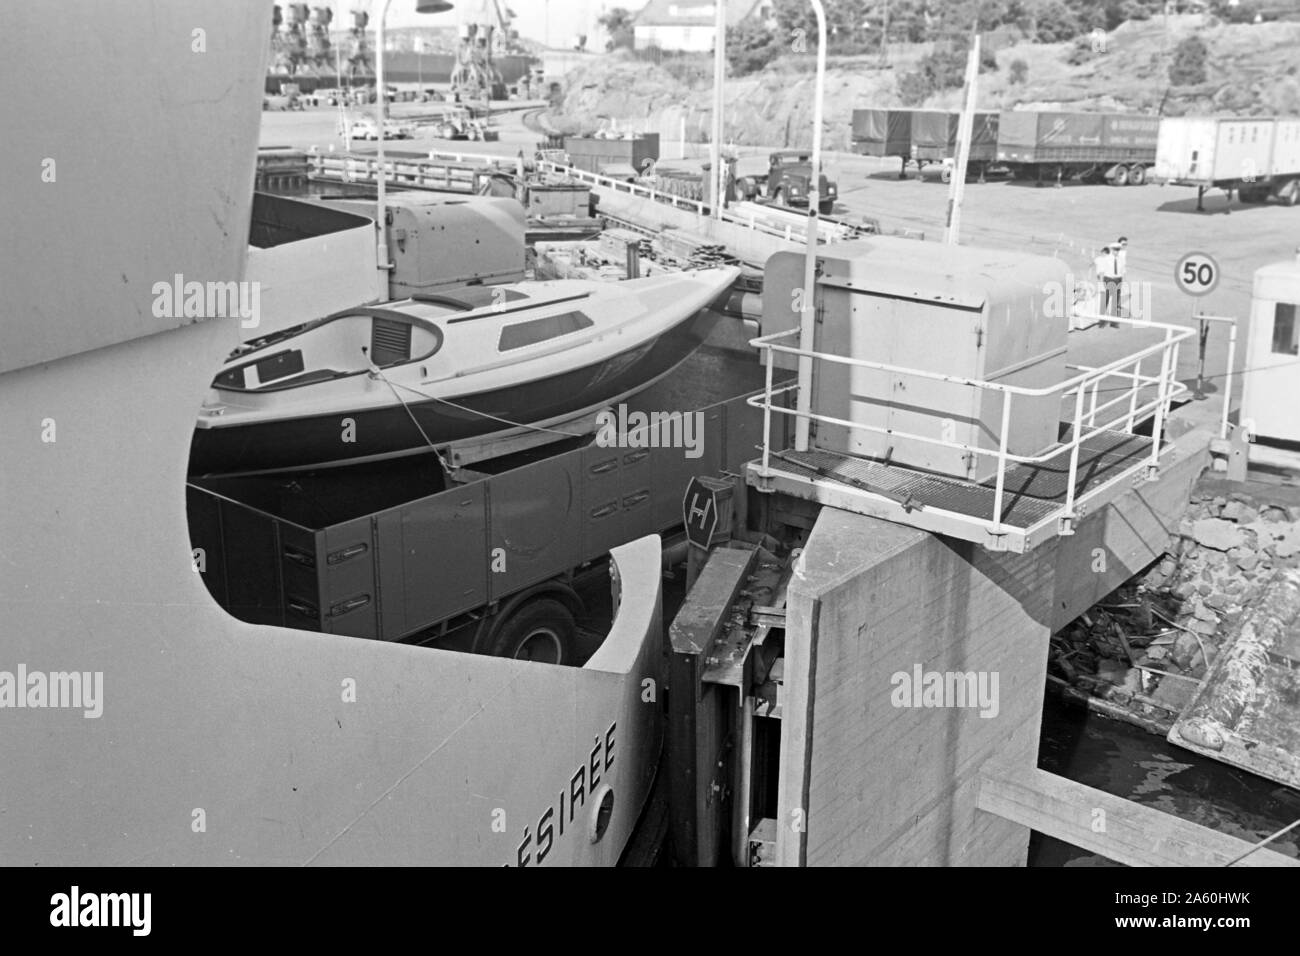 Motorboote werden von einer Fähre verladen, Göteborg, Schweden 1969. Motorboote sind immer Last von Bord, Göteborg Schweden 1969. Stockfoto